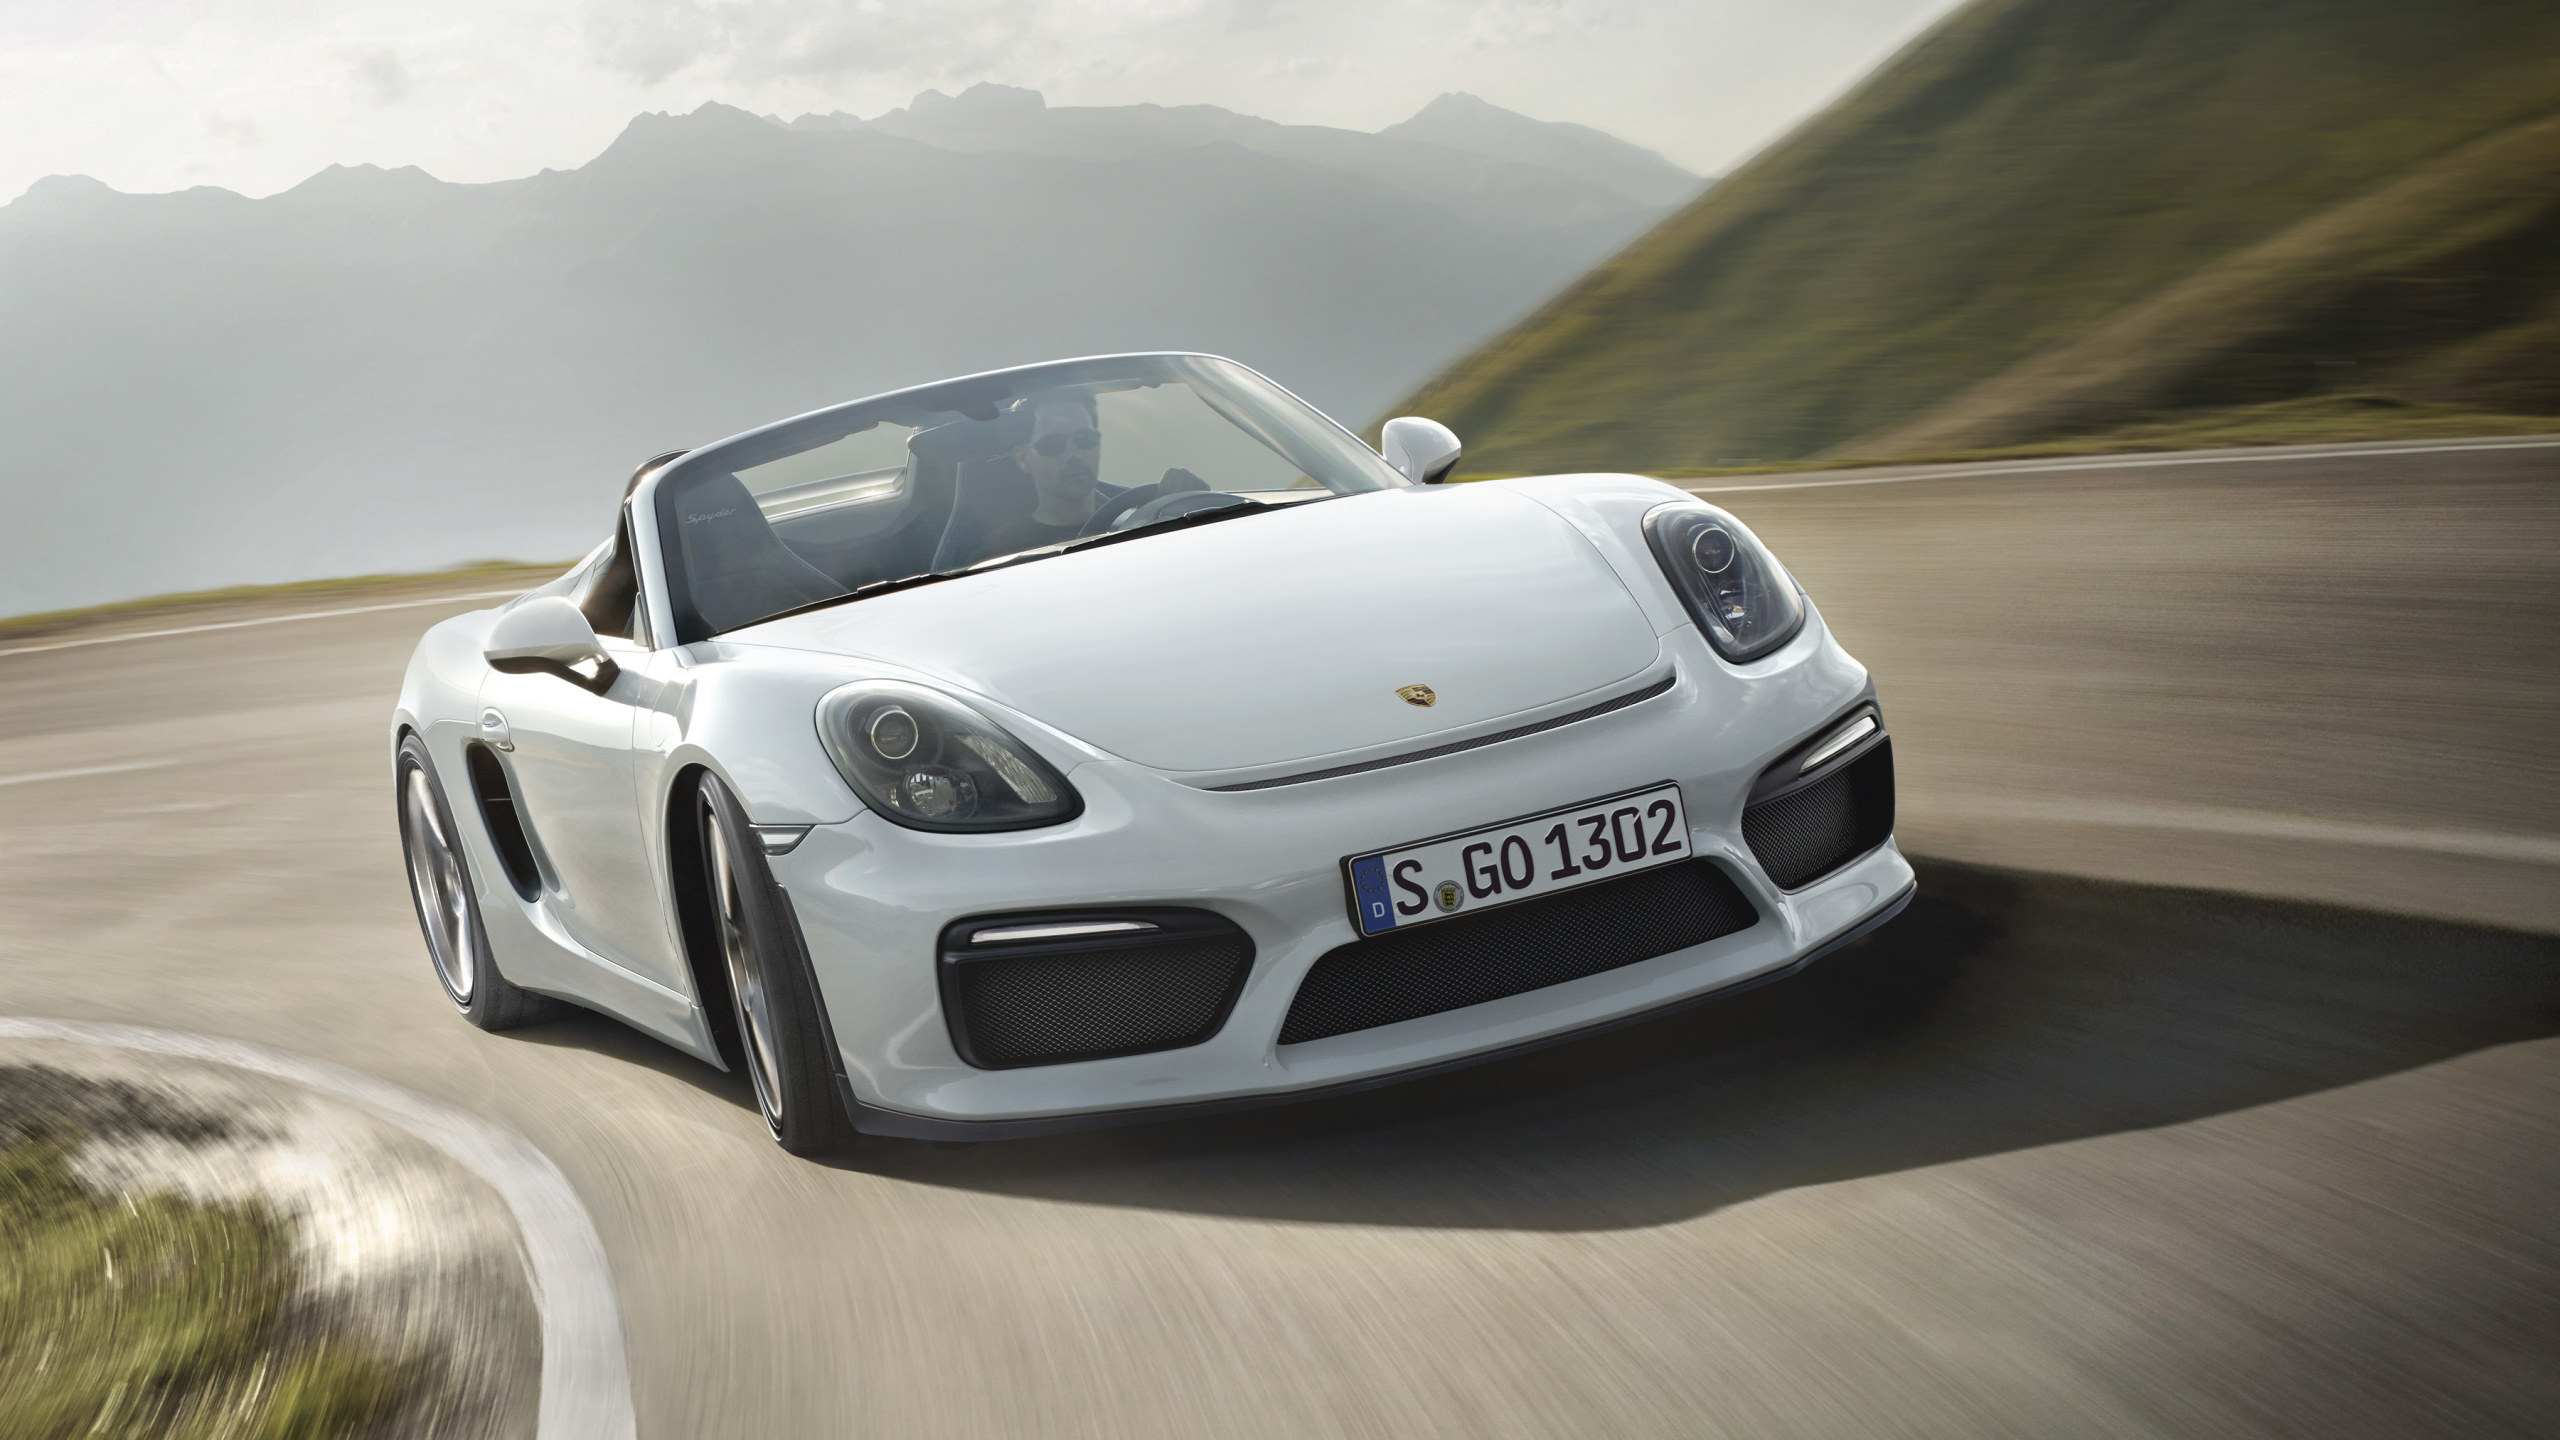 Porsche 911 Blanche Sur Route Pendant la Journée. Wallpaper in 2560x1440 Resolution